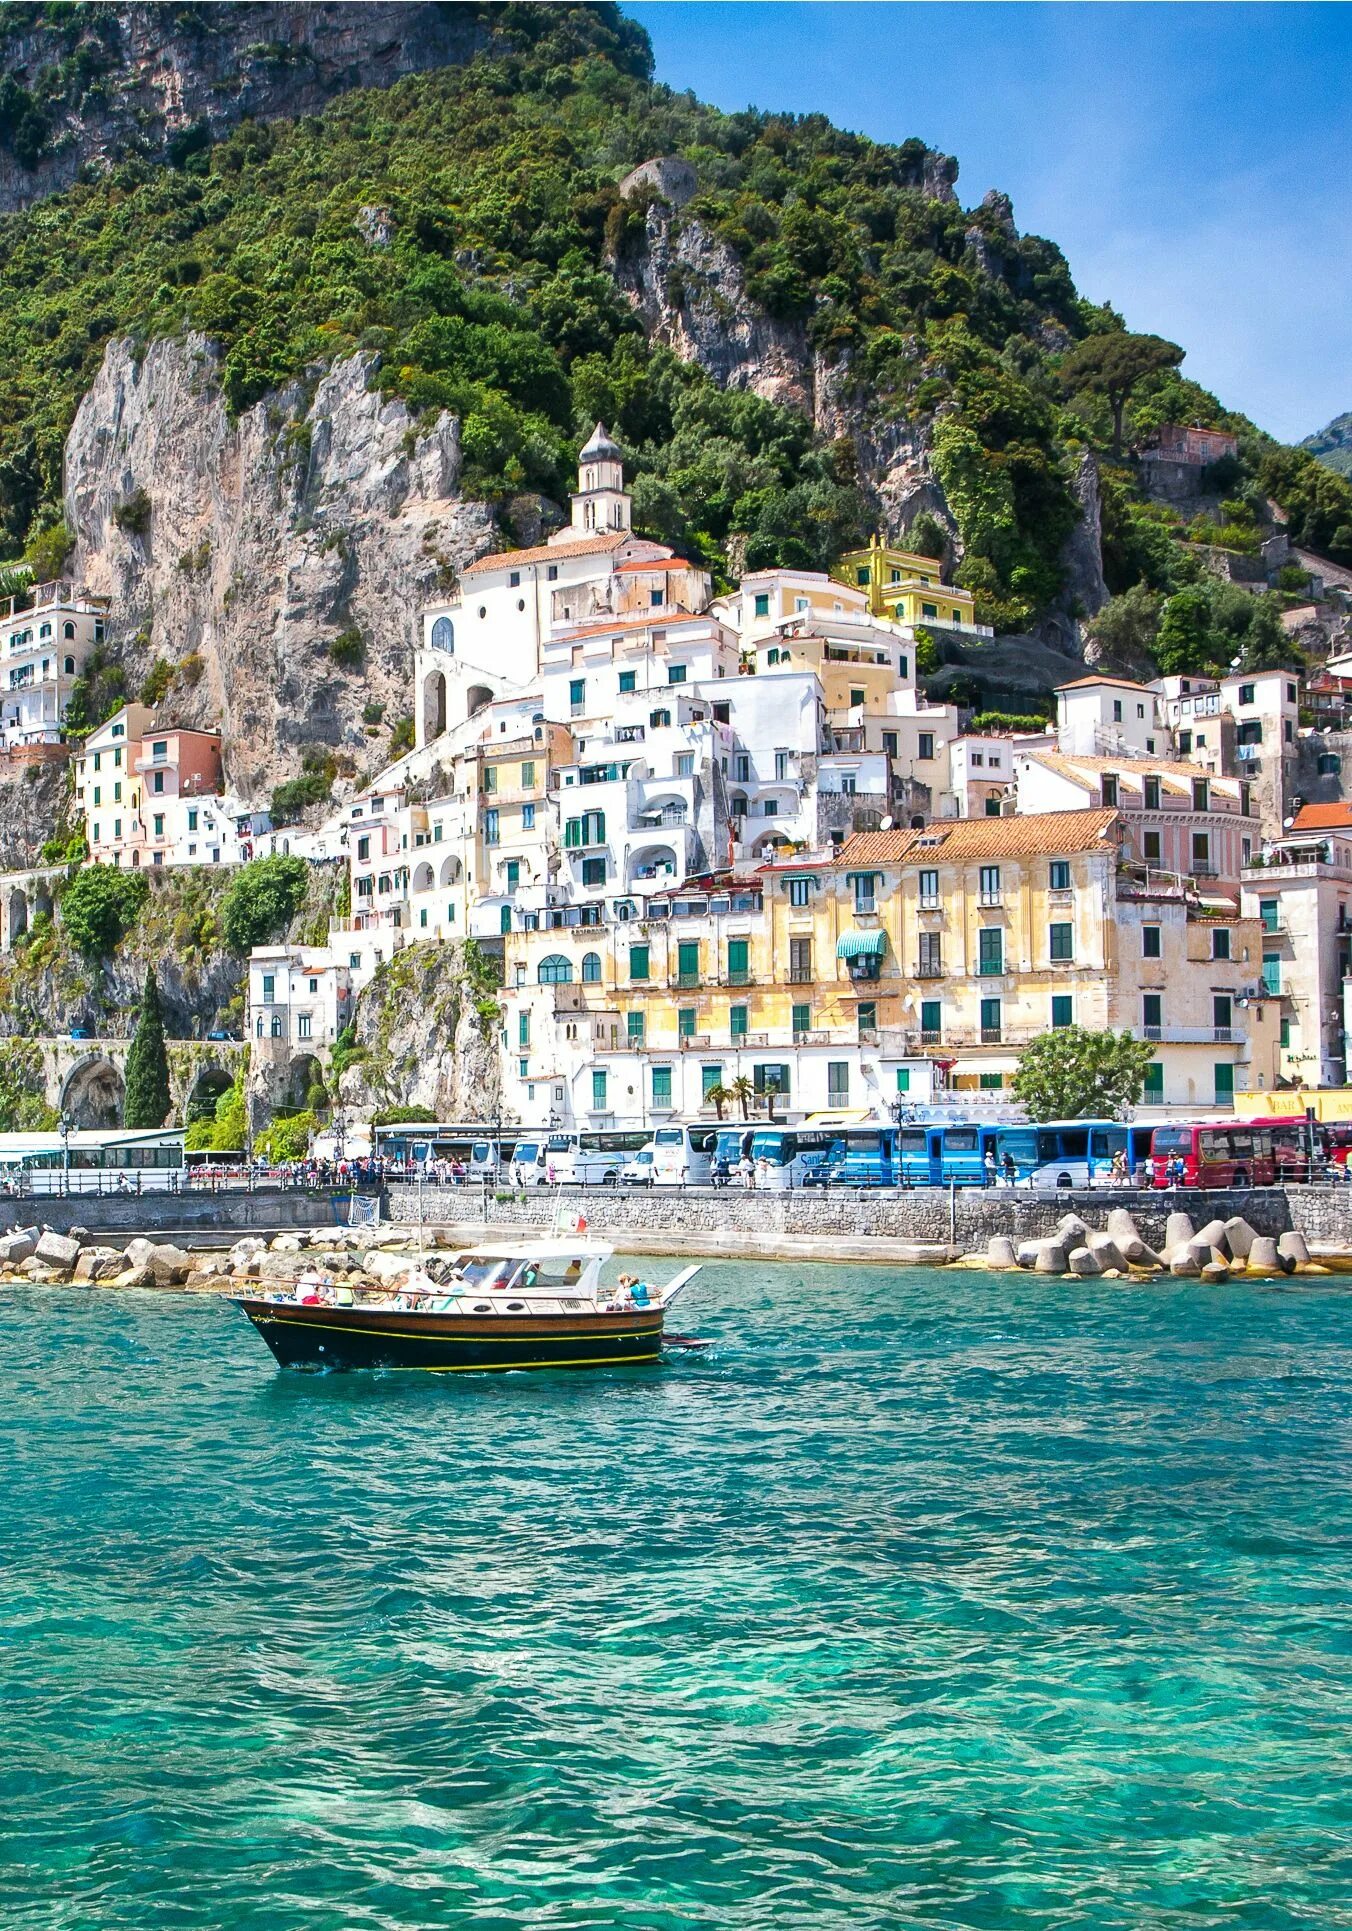 Амальфийское побережье (Amalfi Coast), Италия. Амальфи Позитано Италия. Позитано побережье Амальфи. Неаполь- Сорренто- Амальфи.